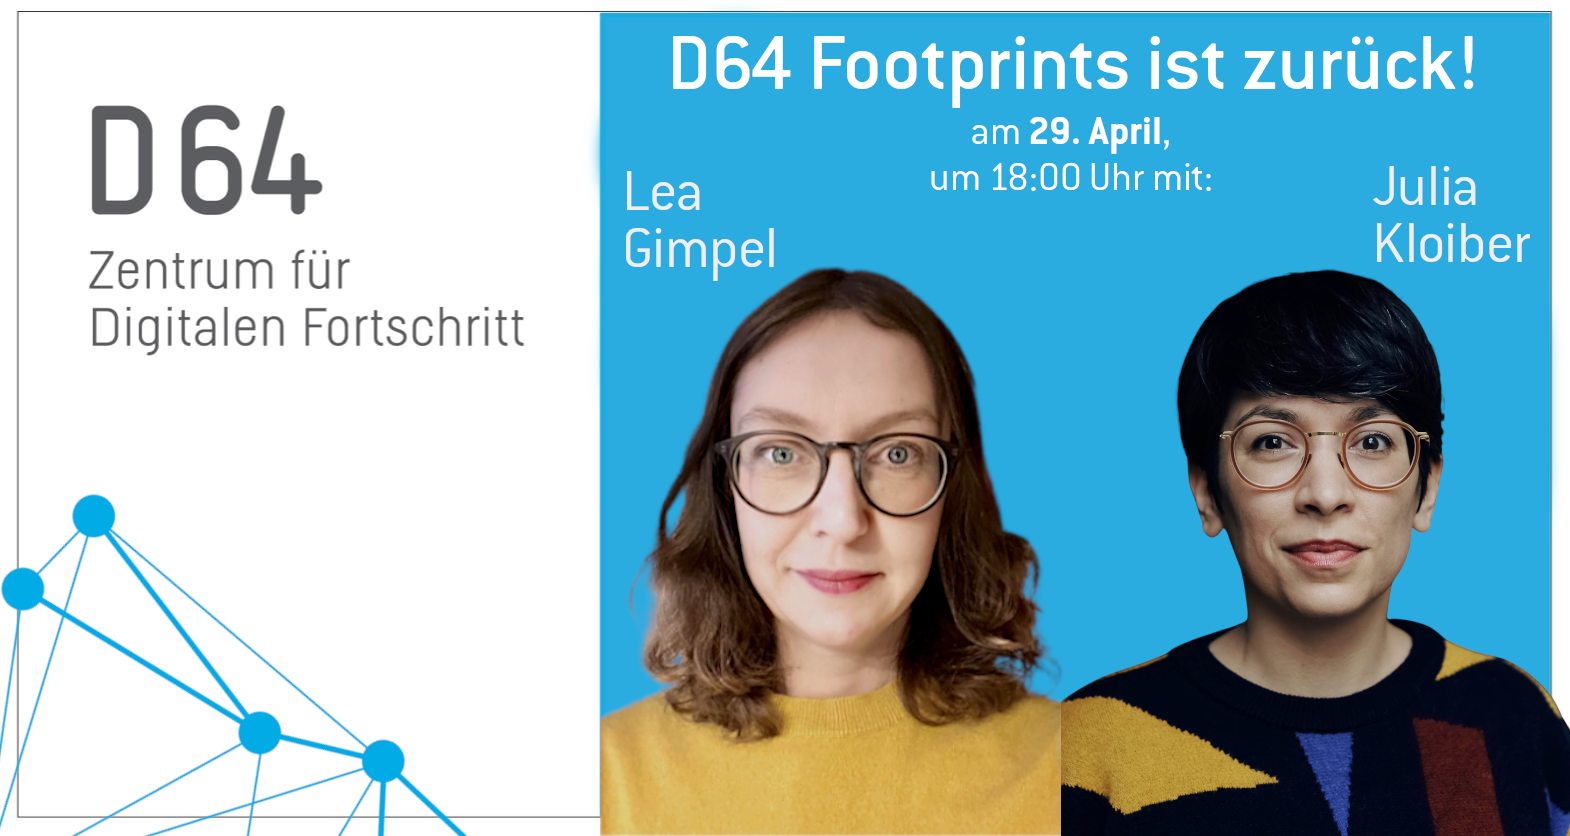 D64 Footprints ist zurück! Am . April um 18:00 Uhr mit Lea Gimpel und Julia Kloiber. Darunter sind Portraitaufnahmen von Lea und Julia abgebildet